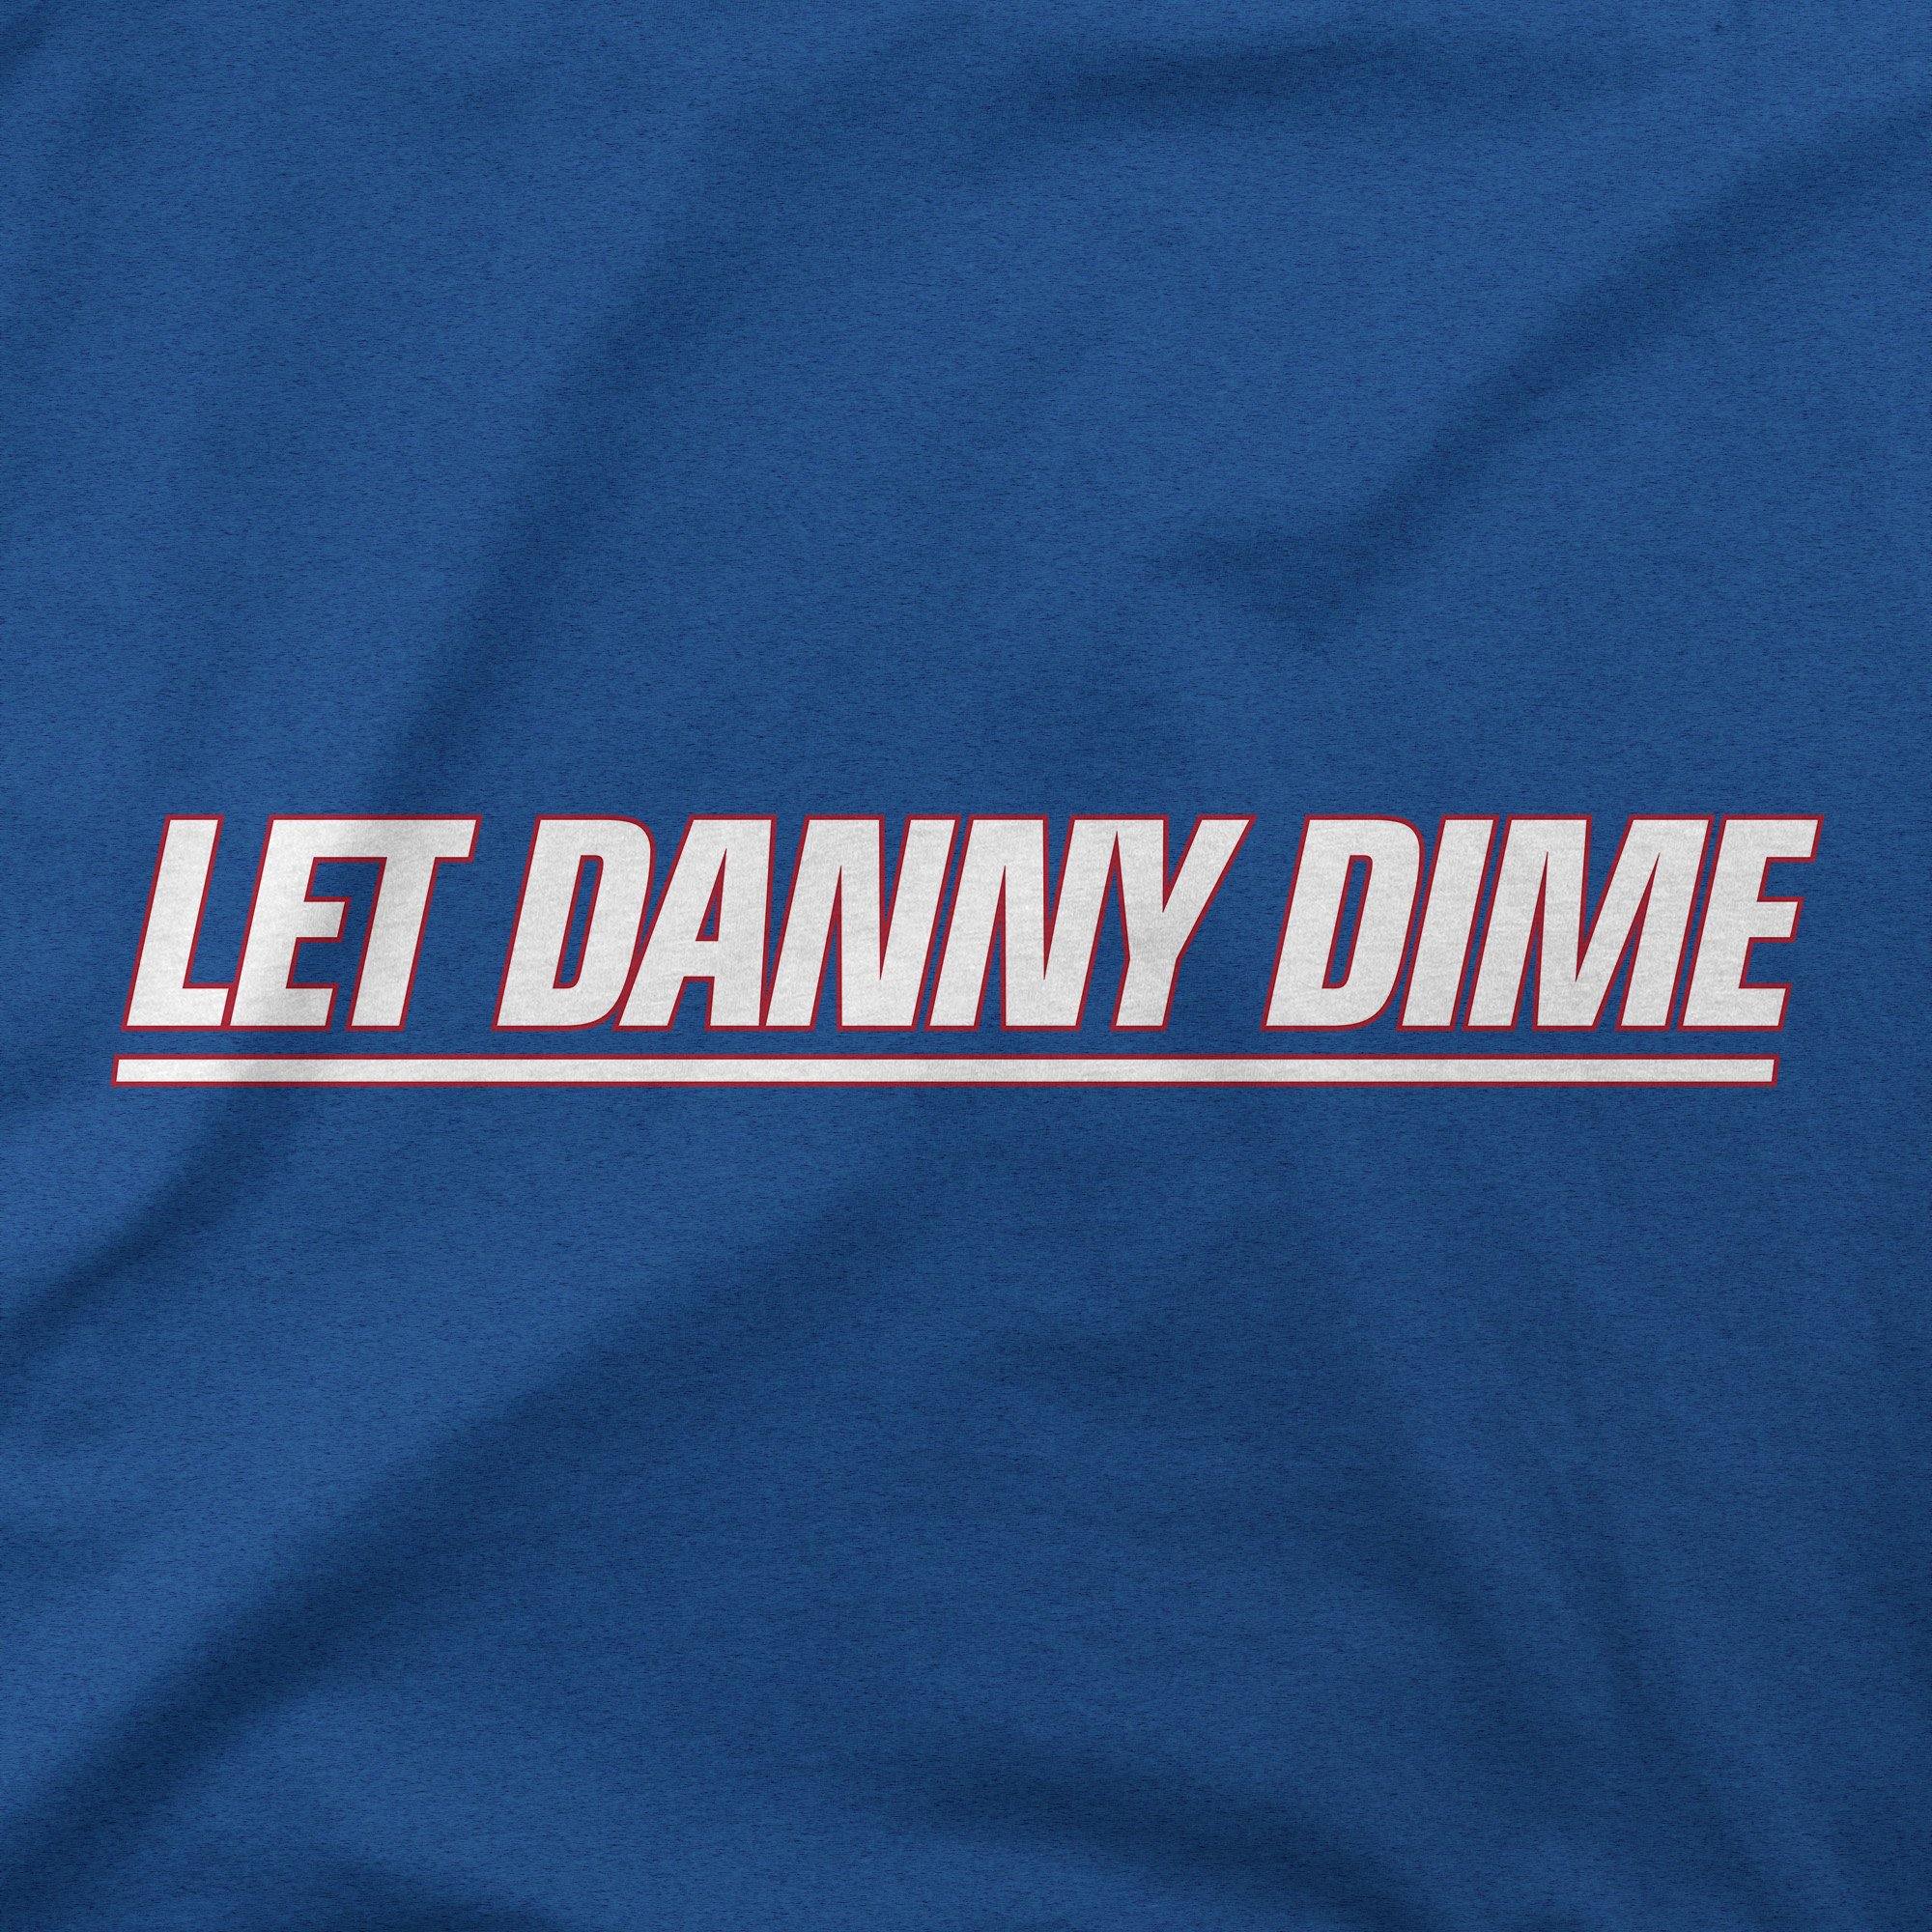 Let Danny Dime   T Shirt   Talkin' Giants   Jomboy Media